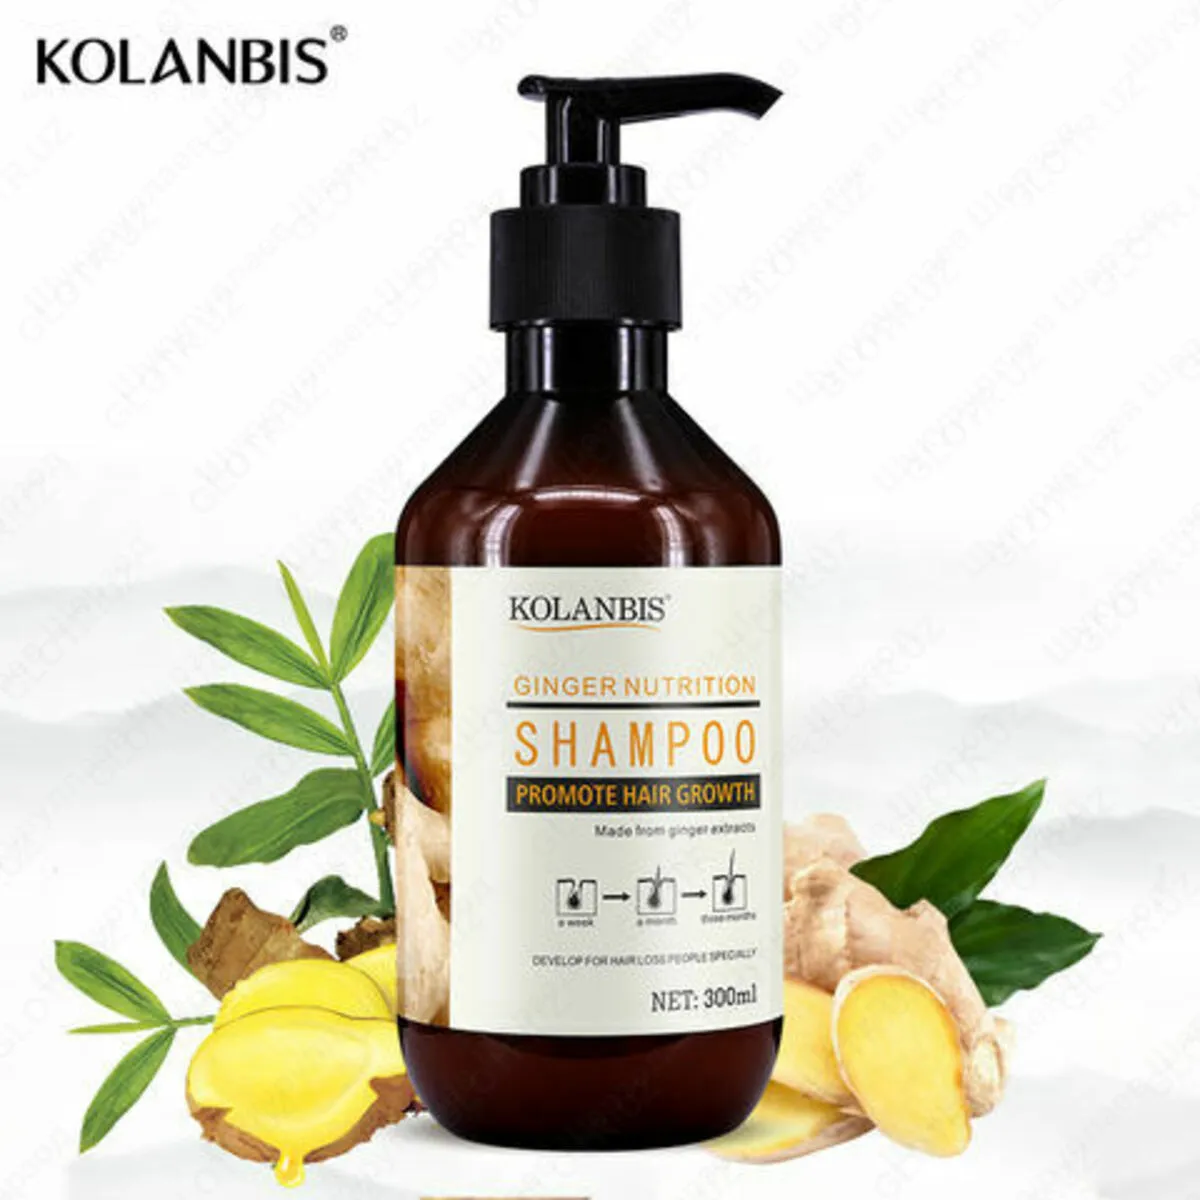 Sochni ildizlardan qoraytiradigan shampun#1